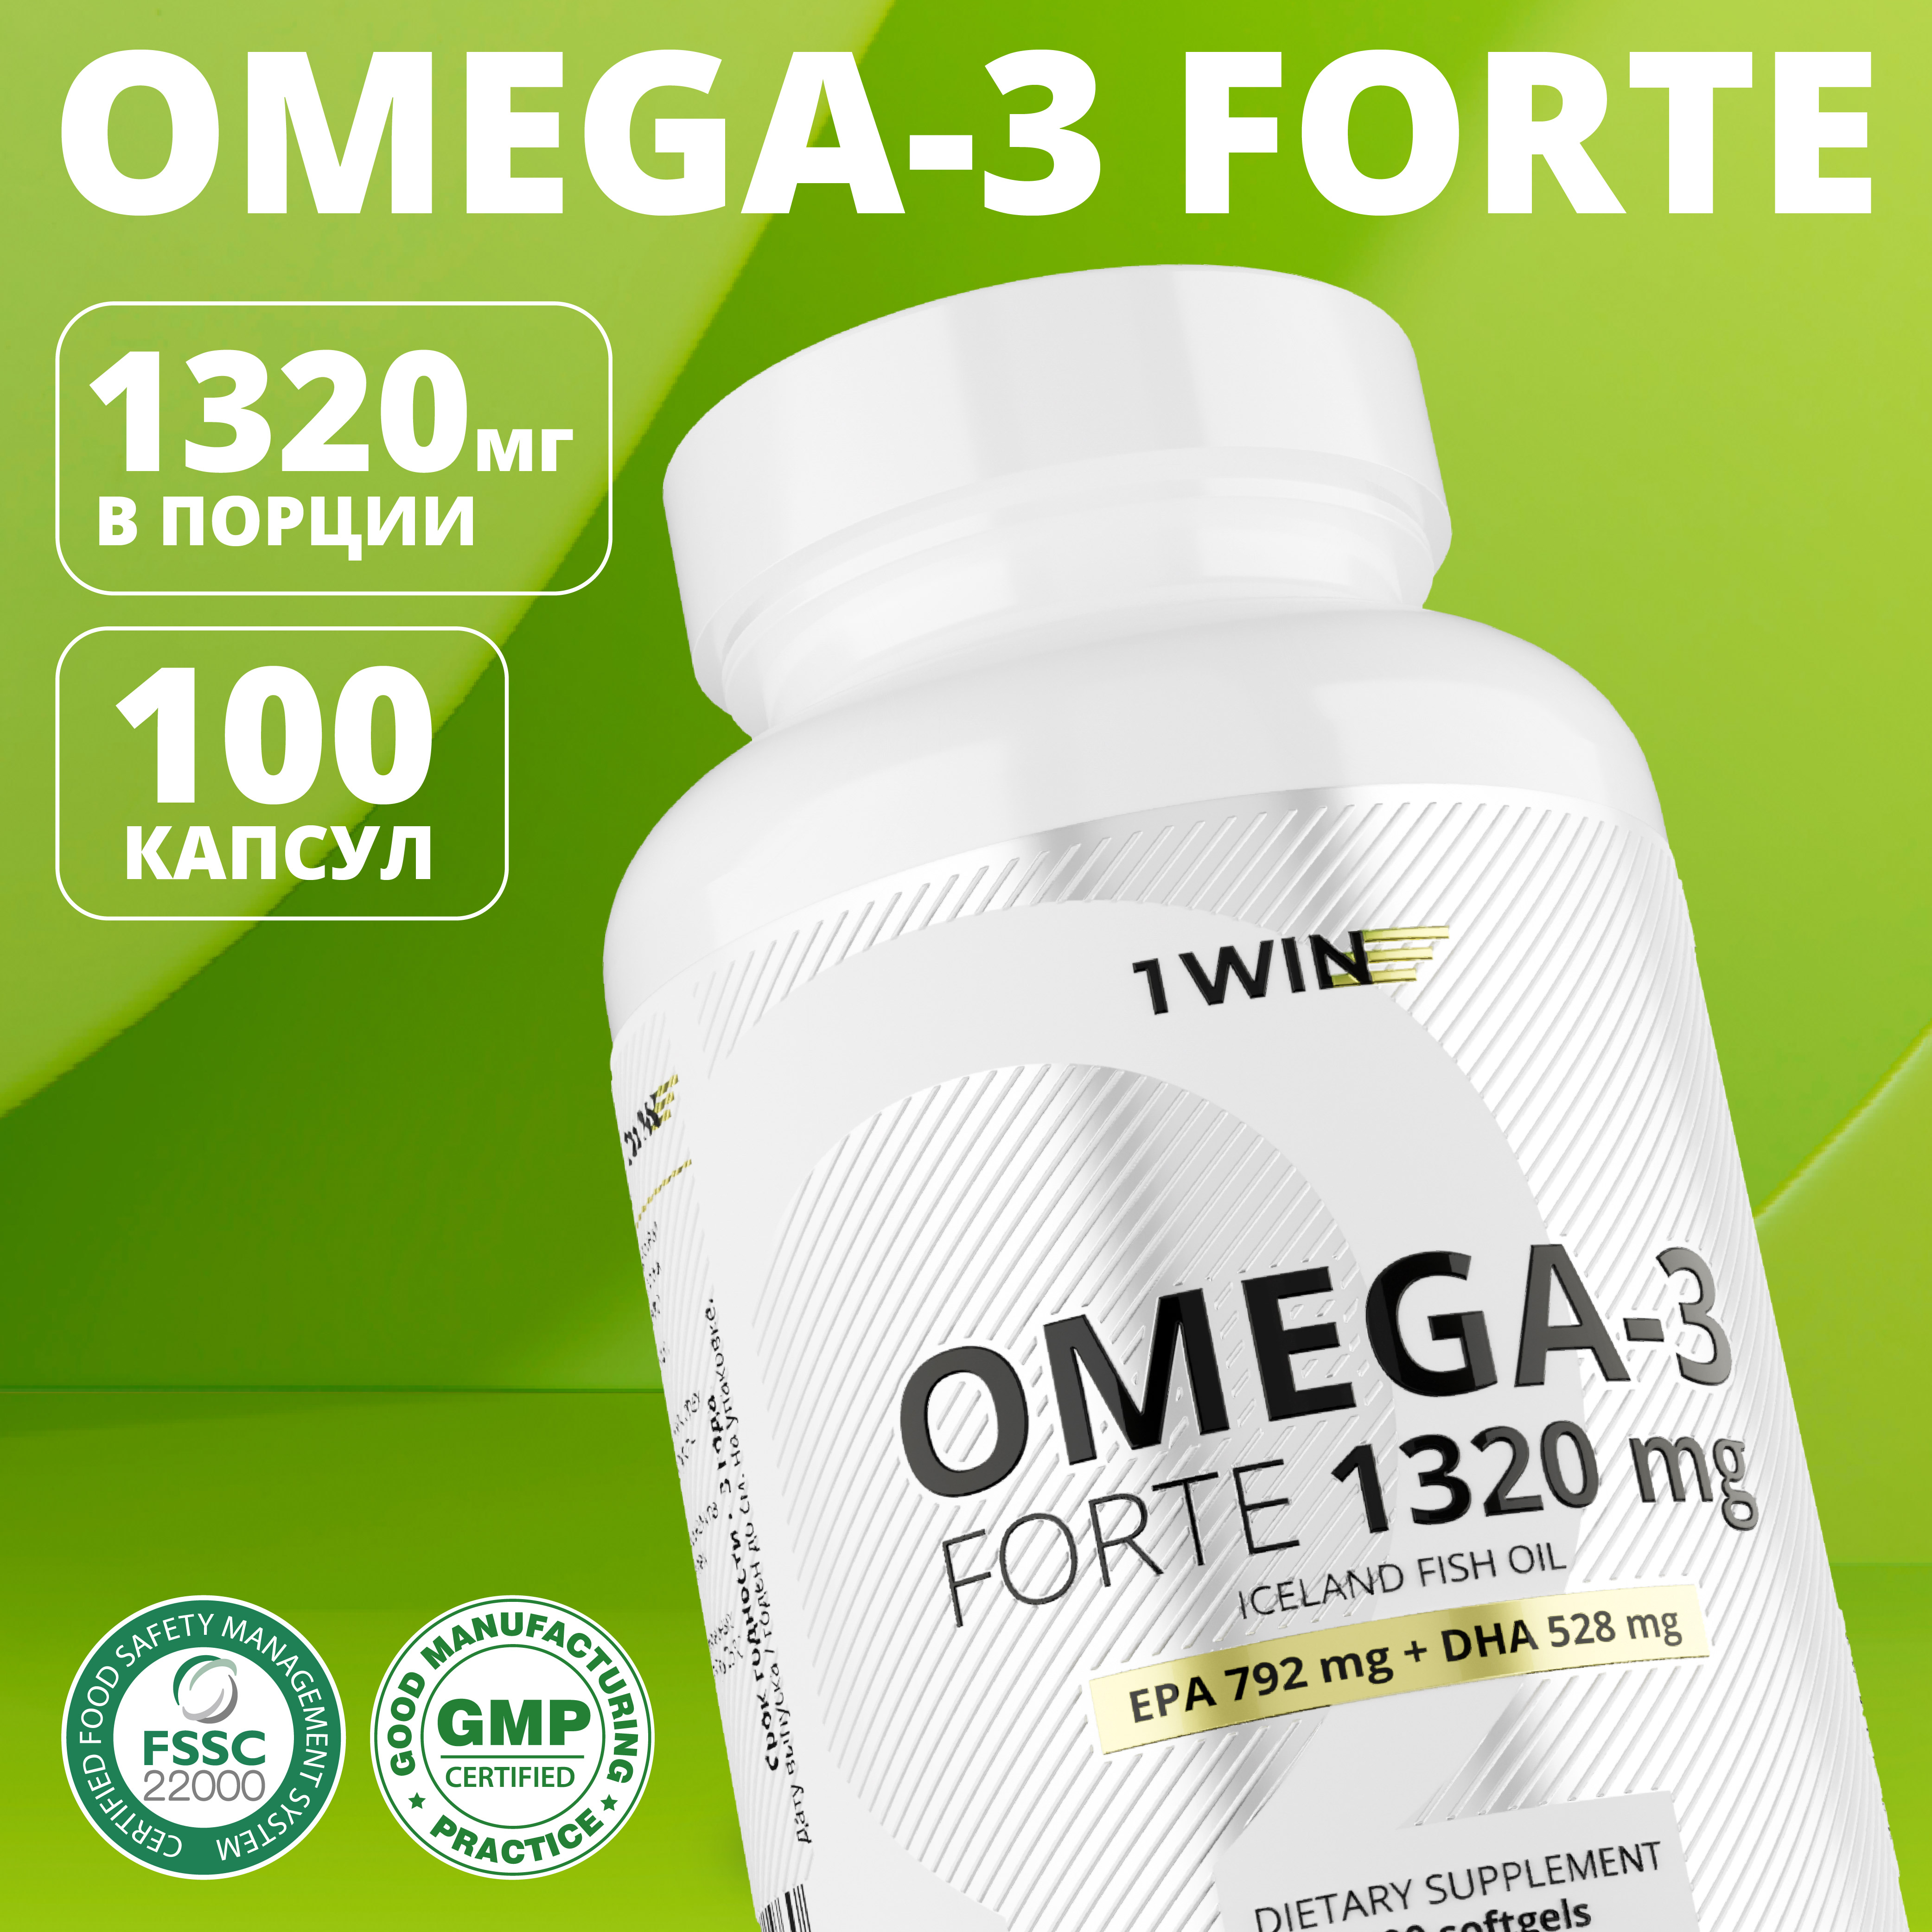 Омега-3 форте 60% 1WIN капсулы 1320 мг 100 шт.